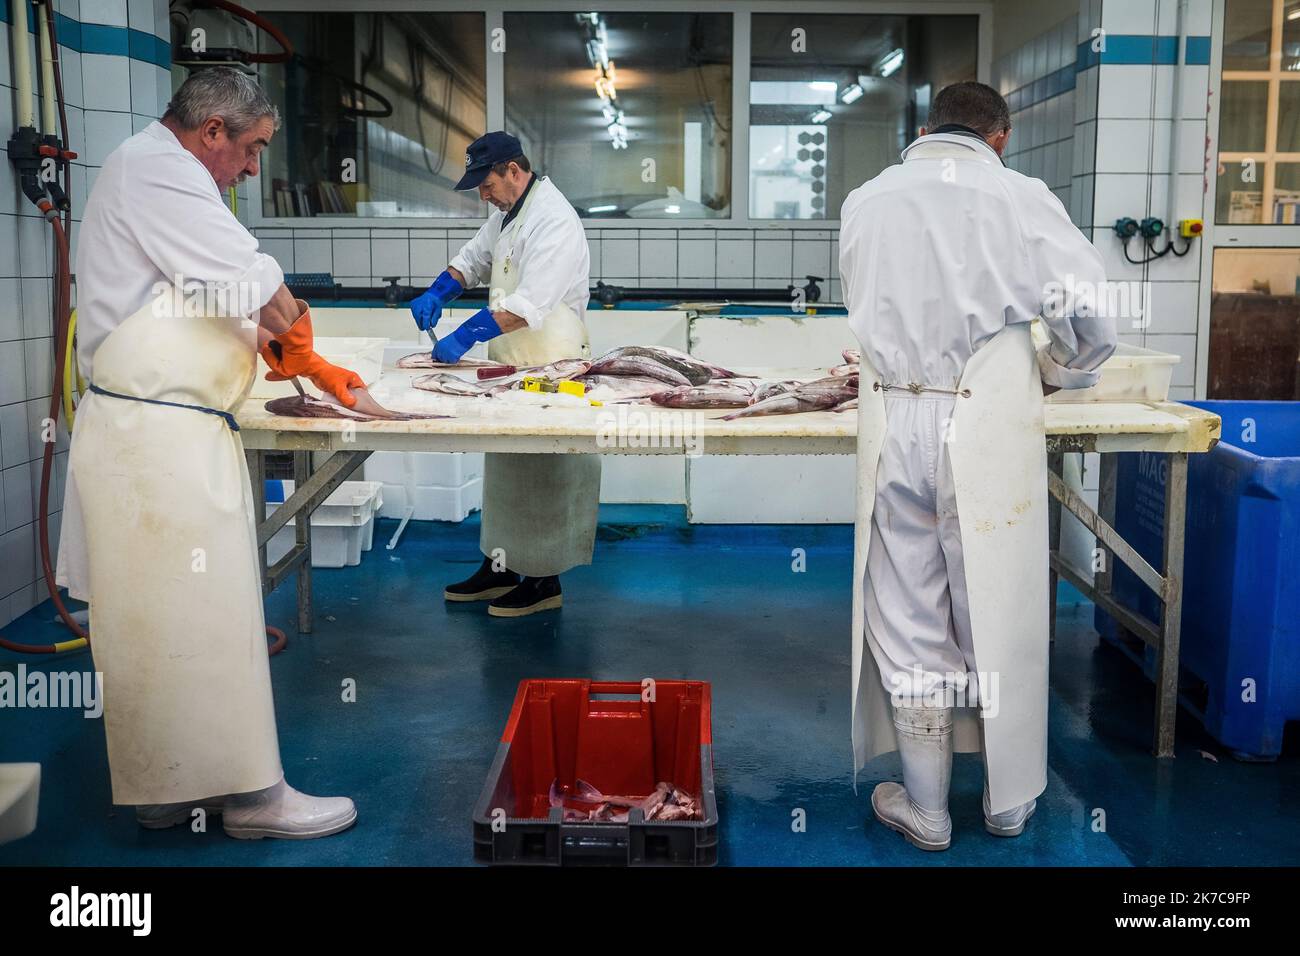 ©Olivier Donnars / Le Pictorium/MAXPPP - Olivier Donnars / Le Pictorium - 26/10/2015 - France / Bretagne / Le Guilvinec - A la criee du Guilvinec (29), dans les ateliers de decoupe de la societe Daniel, arrivent les premiers lots de poissons. La plupart seront evides et decoupes en filets avant expedition. Le Guilvinec est le premier port francais de peche artisanale. / 26/10/2015 - France / Brittany / Le Guilvinec - At the Guilvinec fish auction (29), in the cutting workshops of the Daniel company, the first batches of fish arrive. Most of them will be hollowed out and cut into fillets before Stock Photo